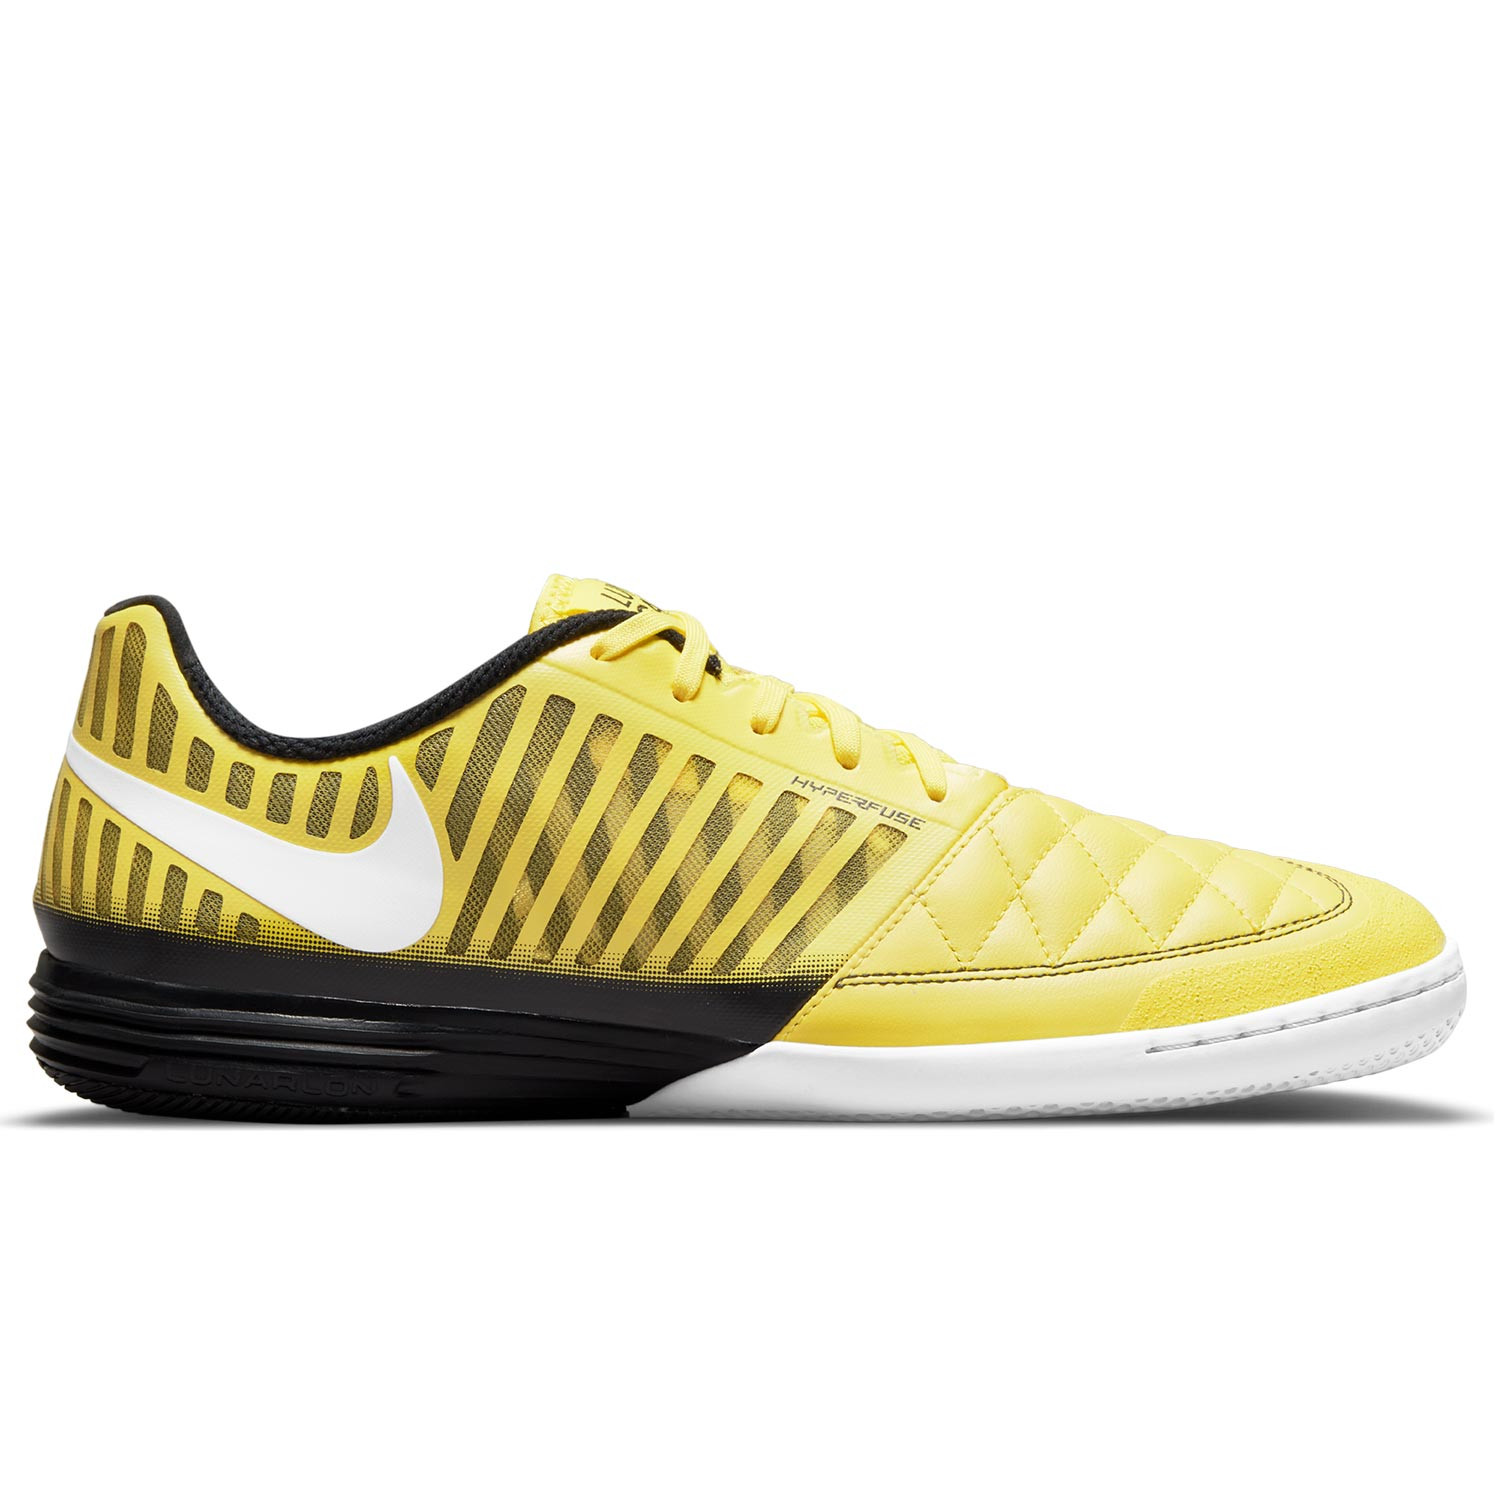 Zapatillas futsal Nike Gato 2 amarillas | futbolmania